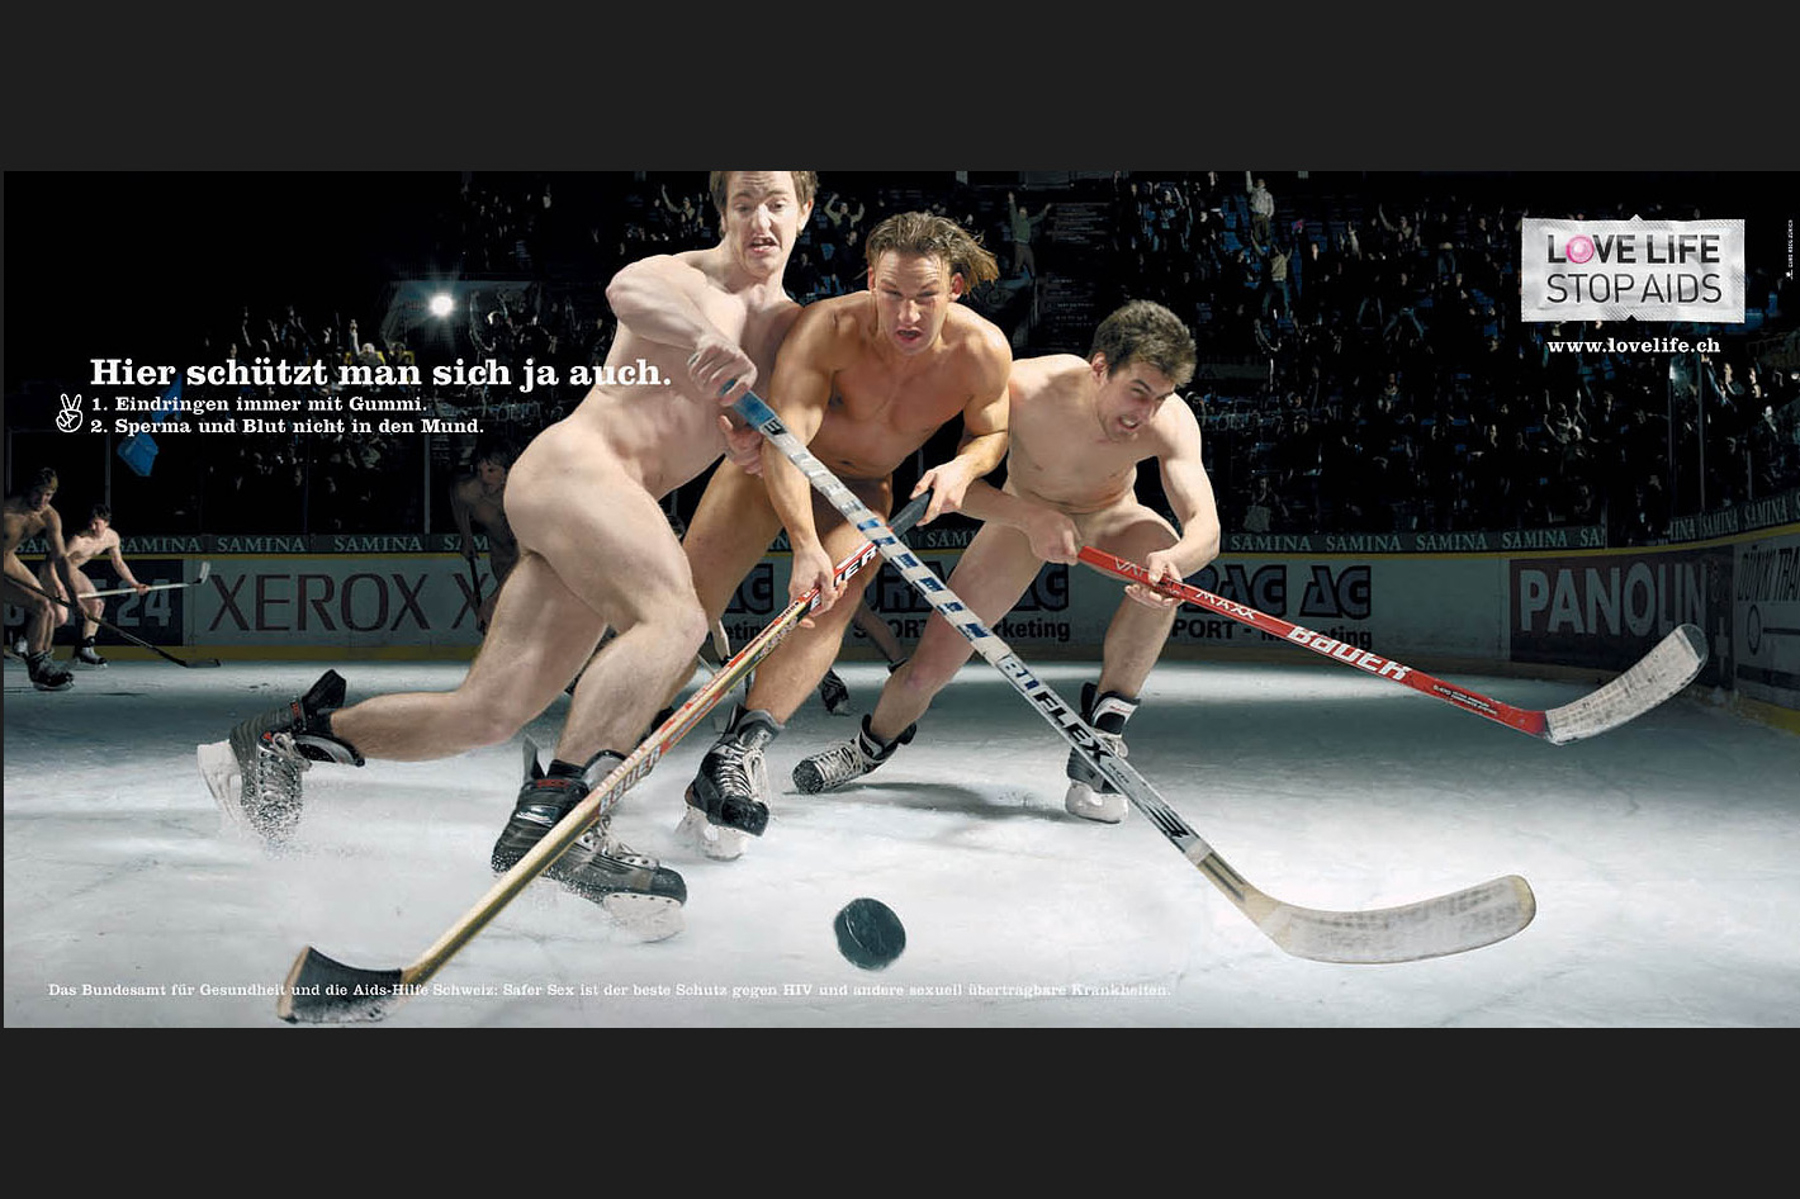 Afiche contra Sida: Hombres desnudos jugando al hockey